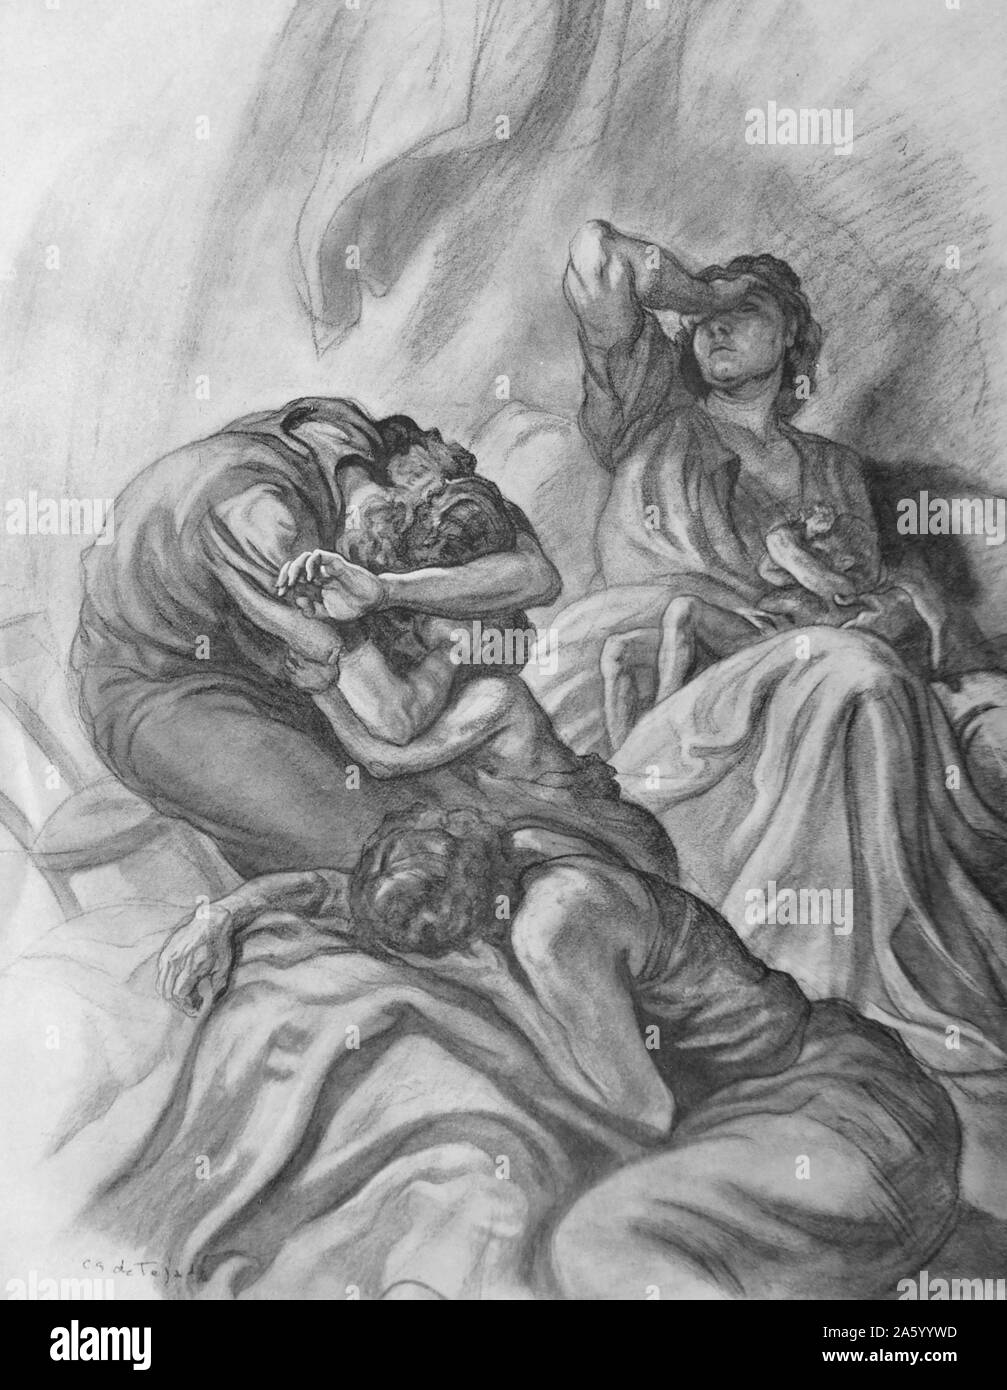 Propaganda-Illustration von Carlos Saenz De Tejada Darstellung einer nationalistischen Familie verzweifelt hungernde Kind umklammert. Datierte 1937 Stockfoto